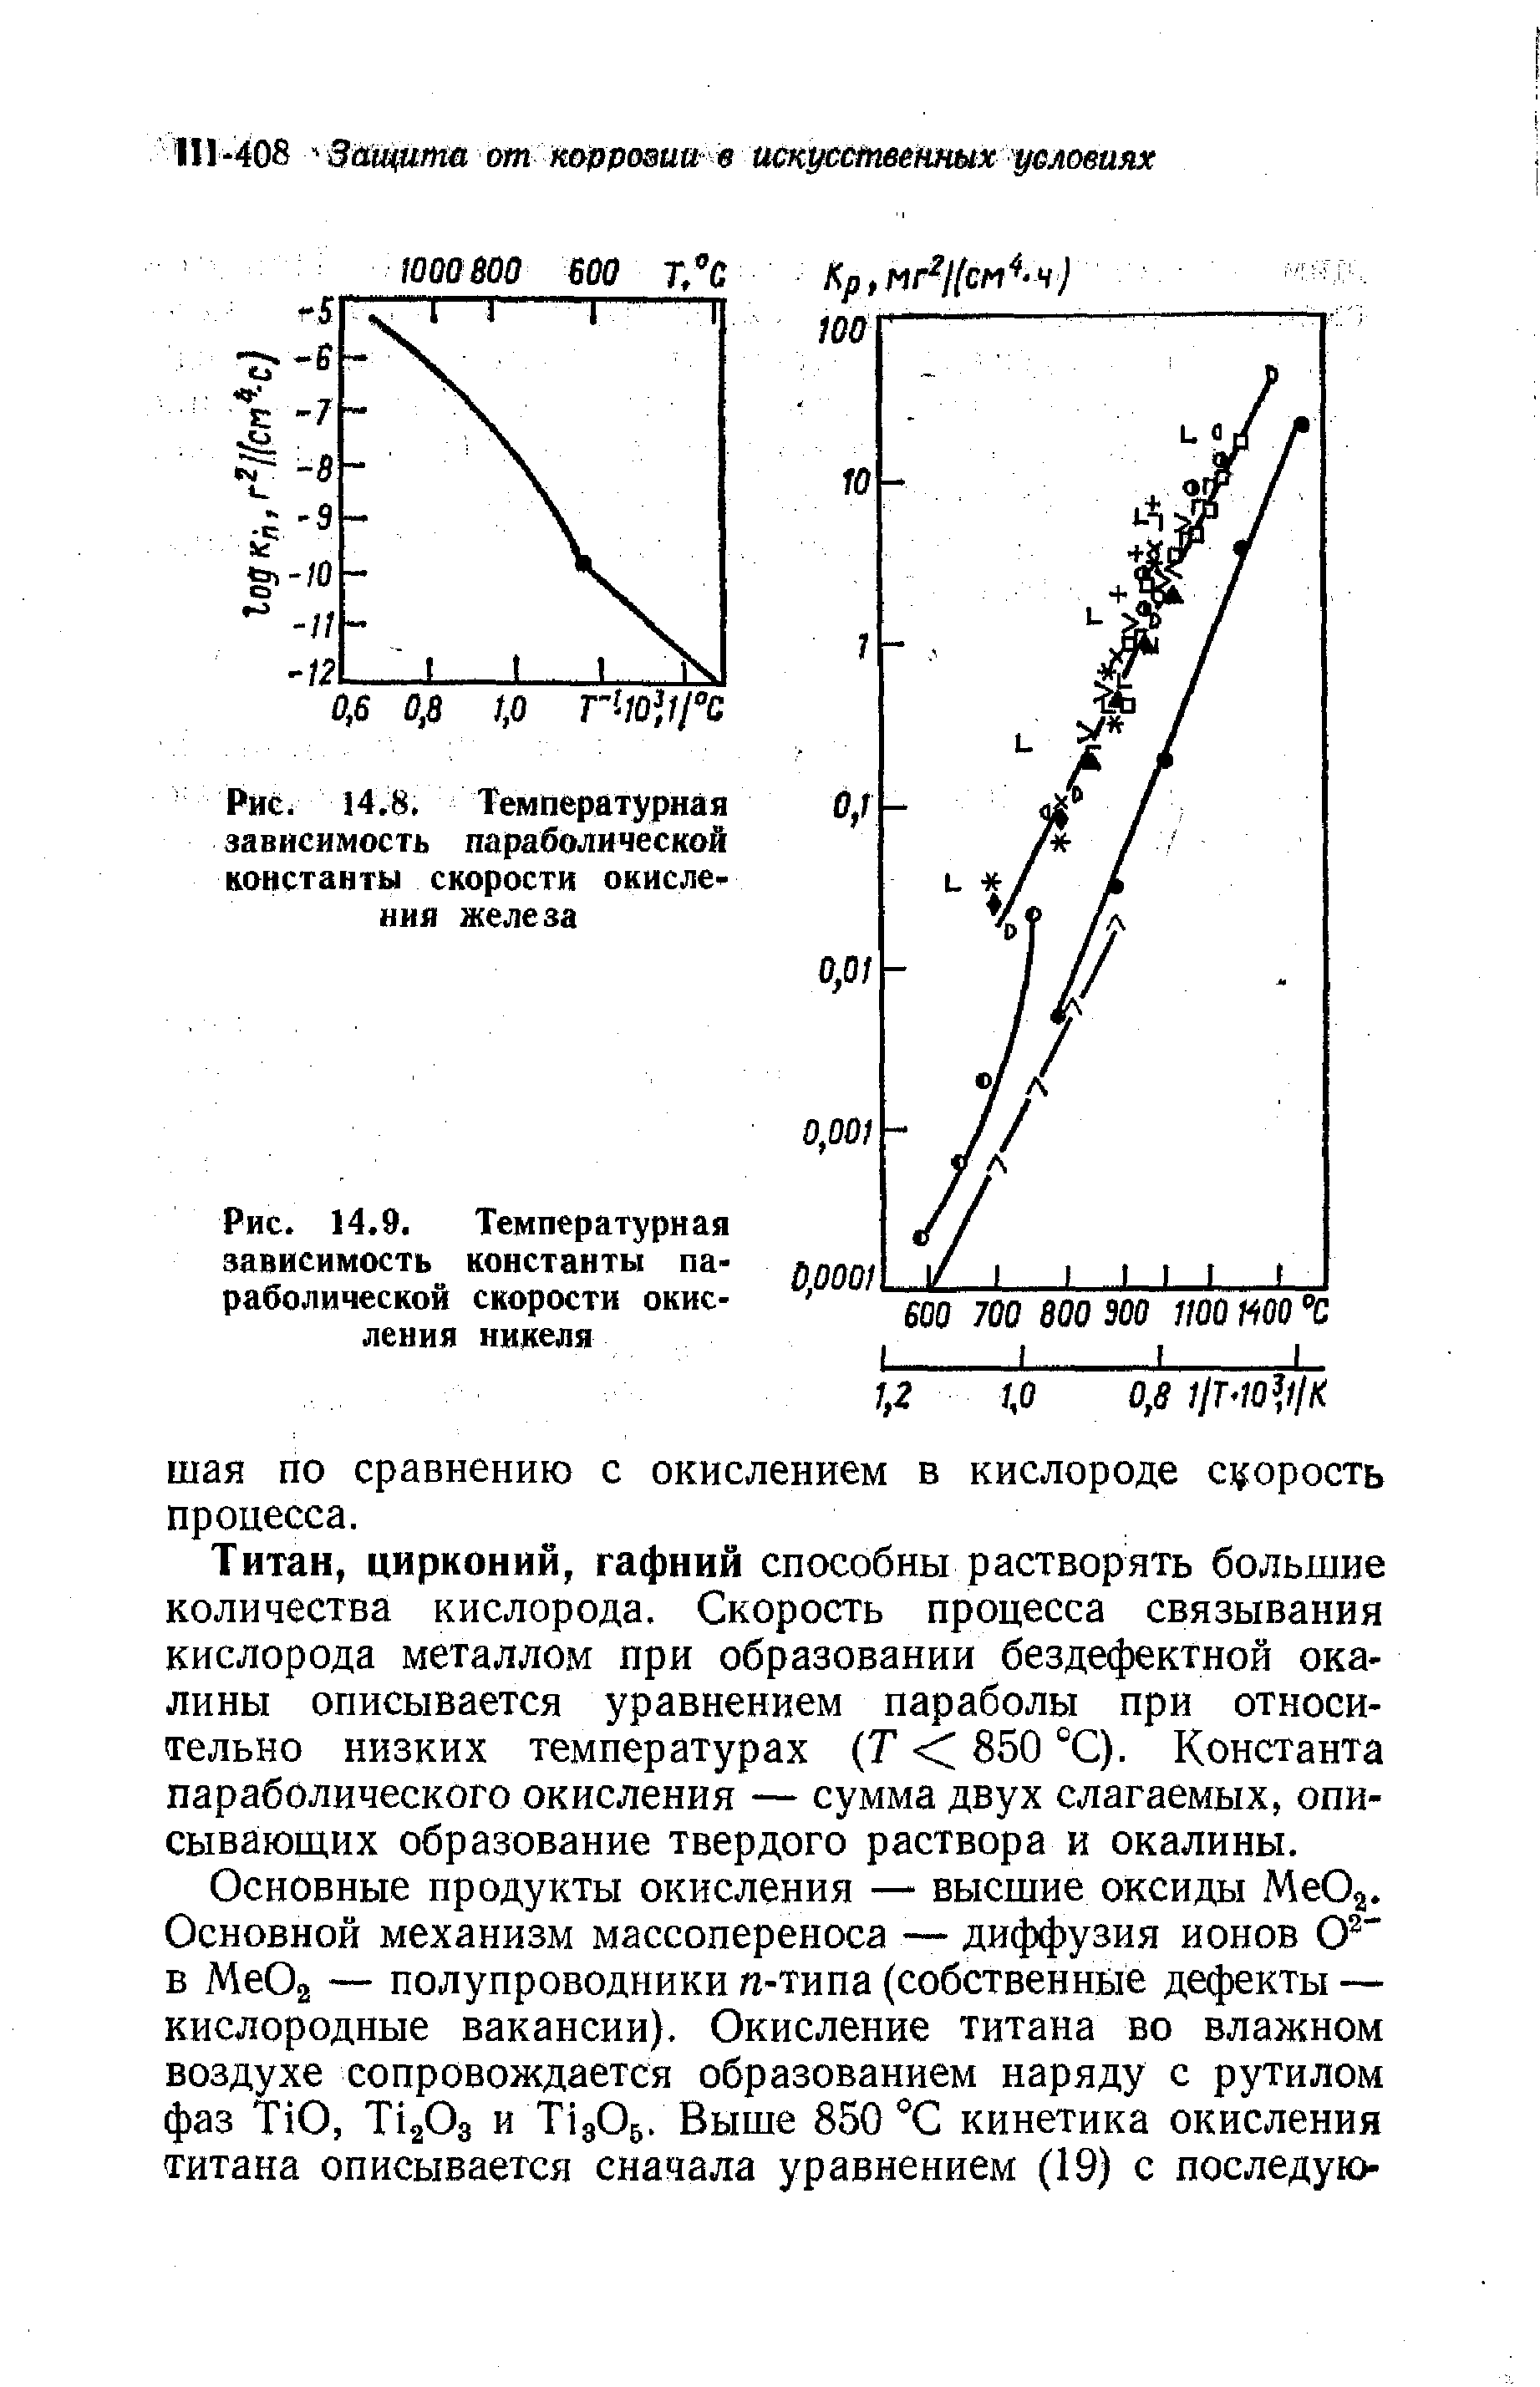 Рис. 14.9. Температурная зависимость константы параболической скорости окисления никеля
